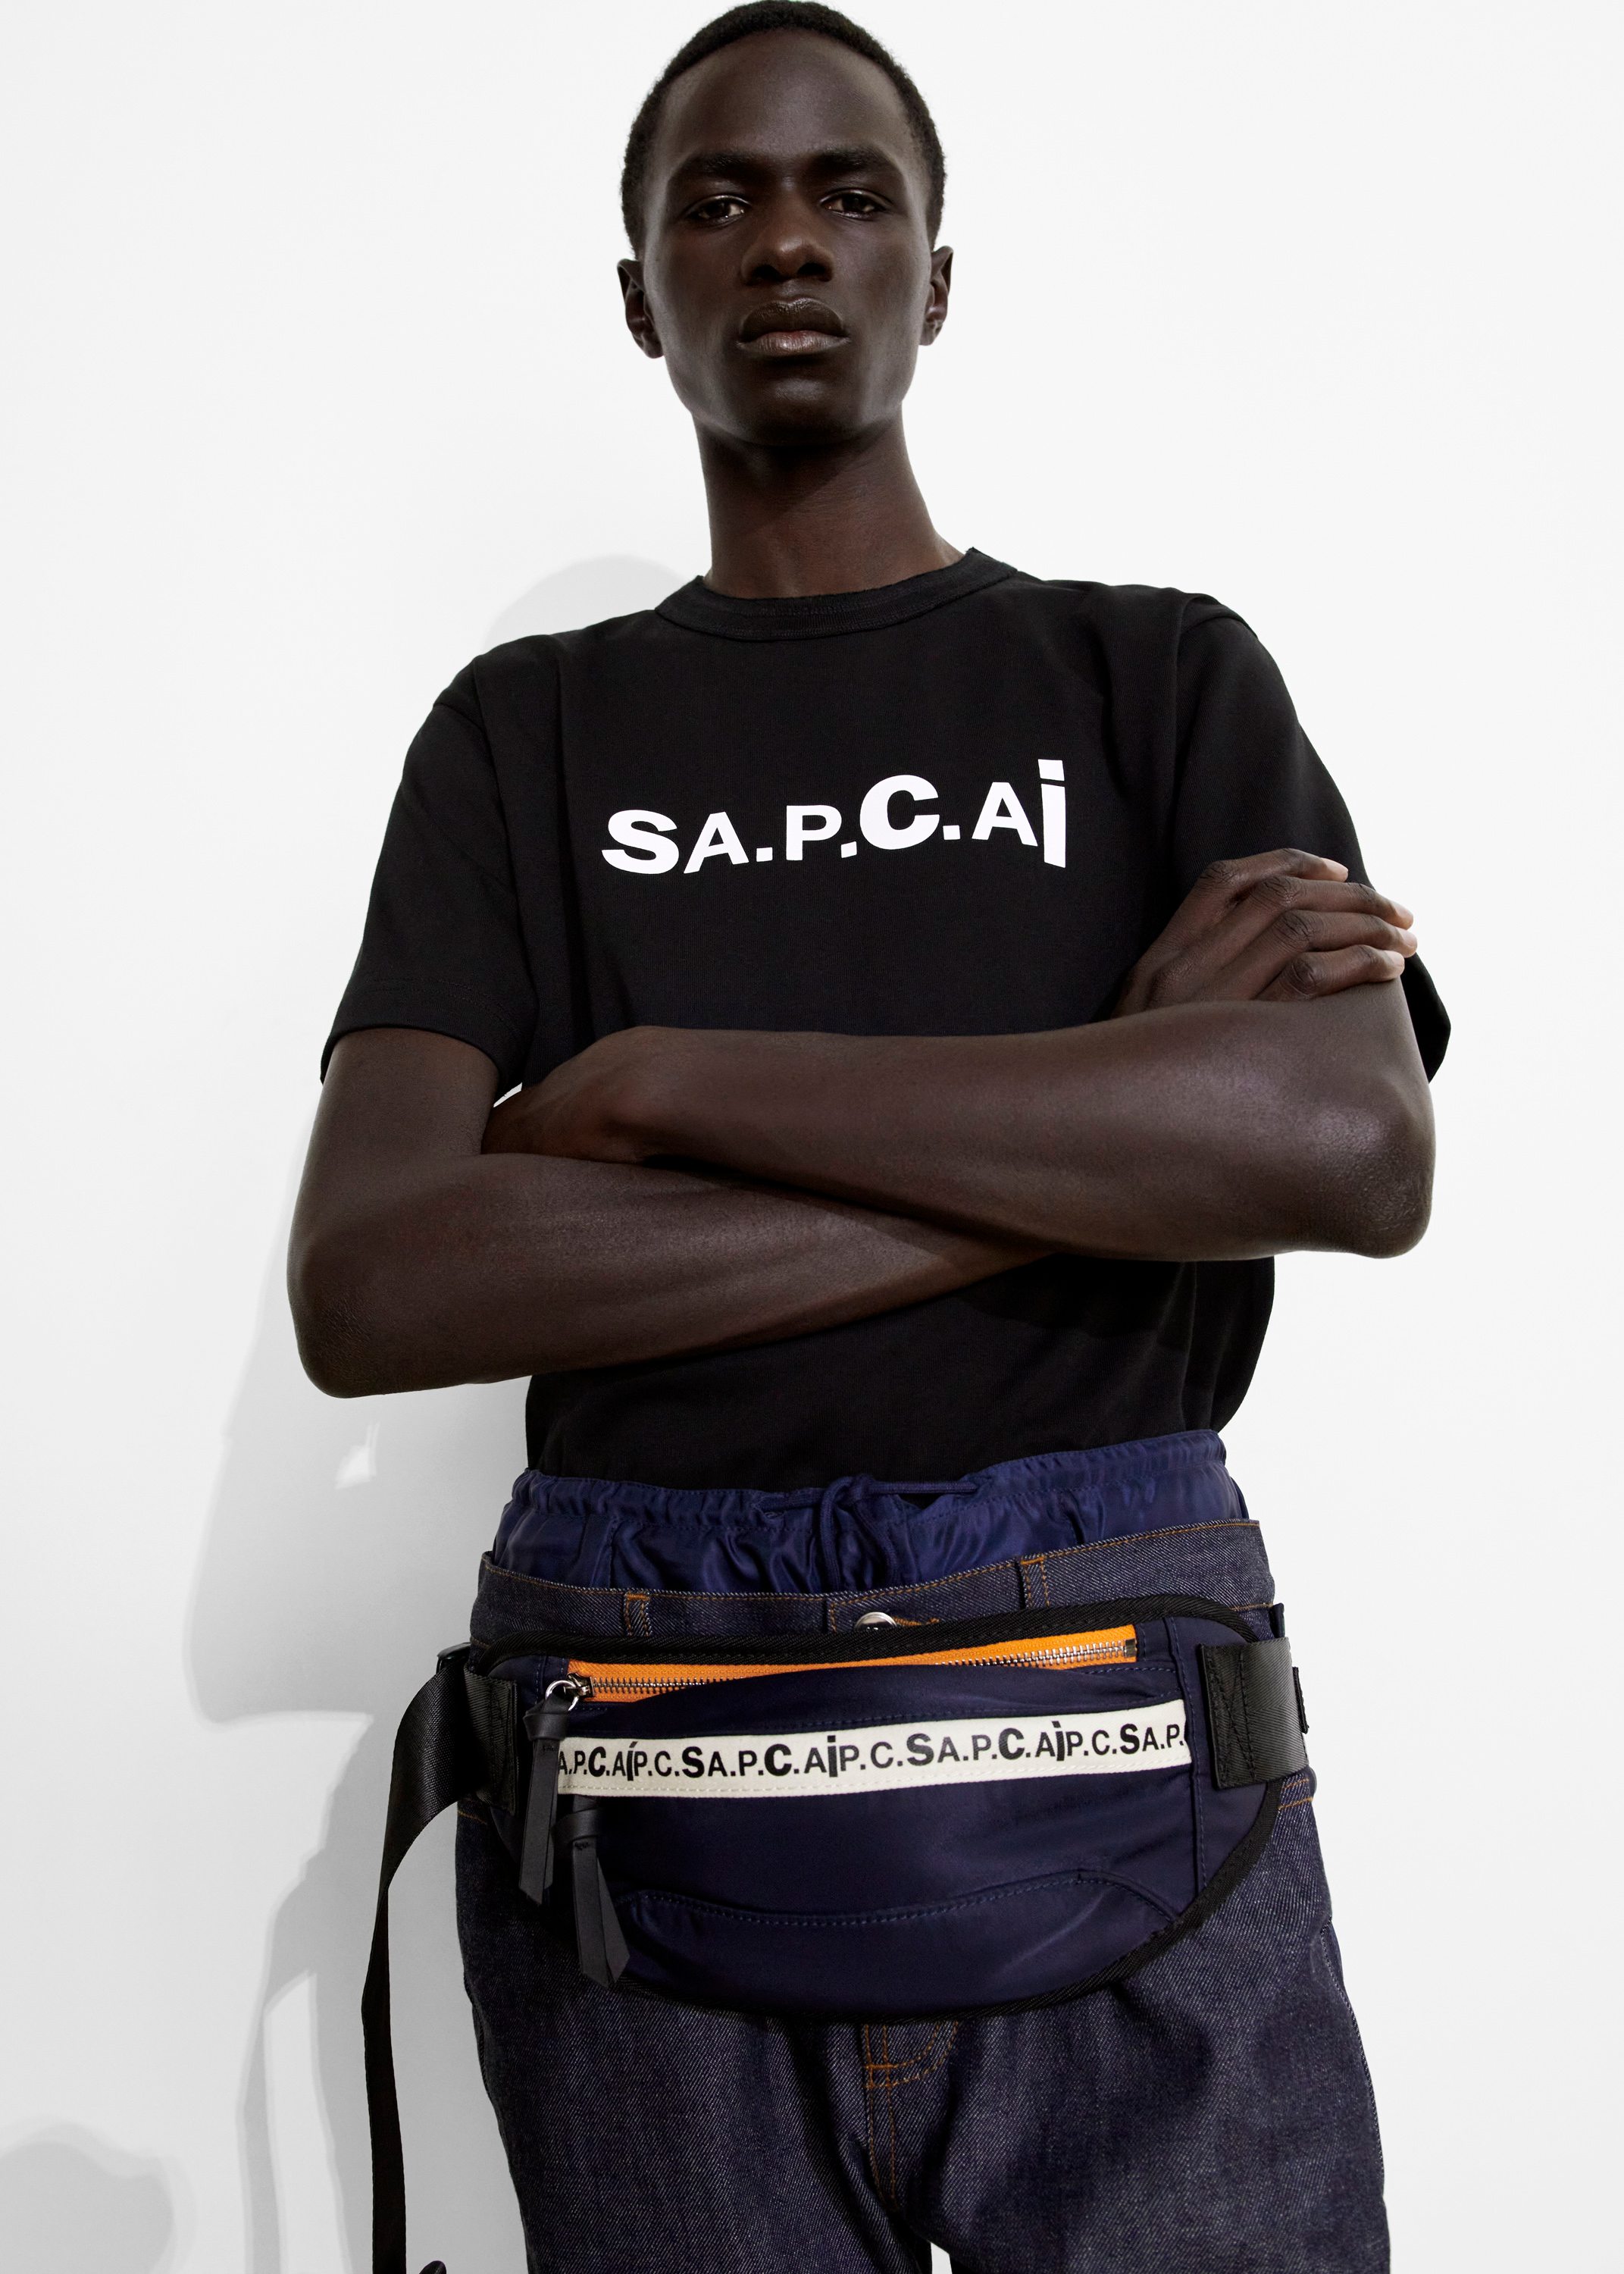 Sacai fusionne denim et nylon dans sa collection pour A.P.C